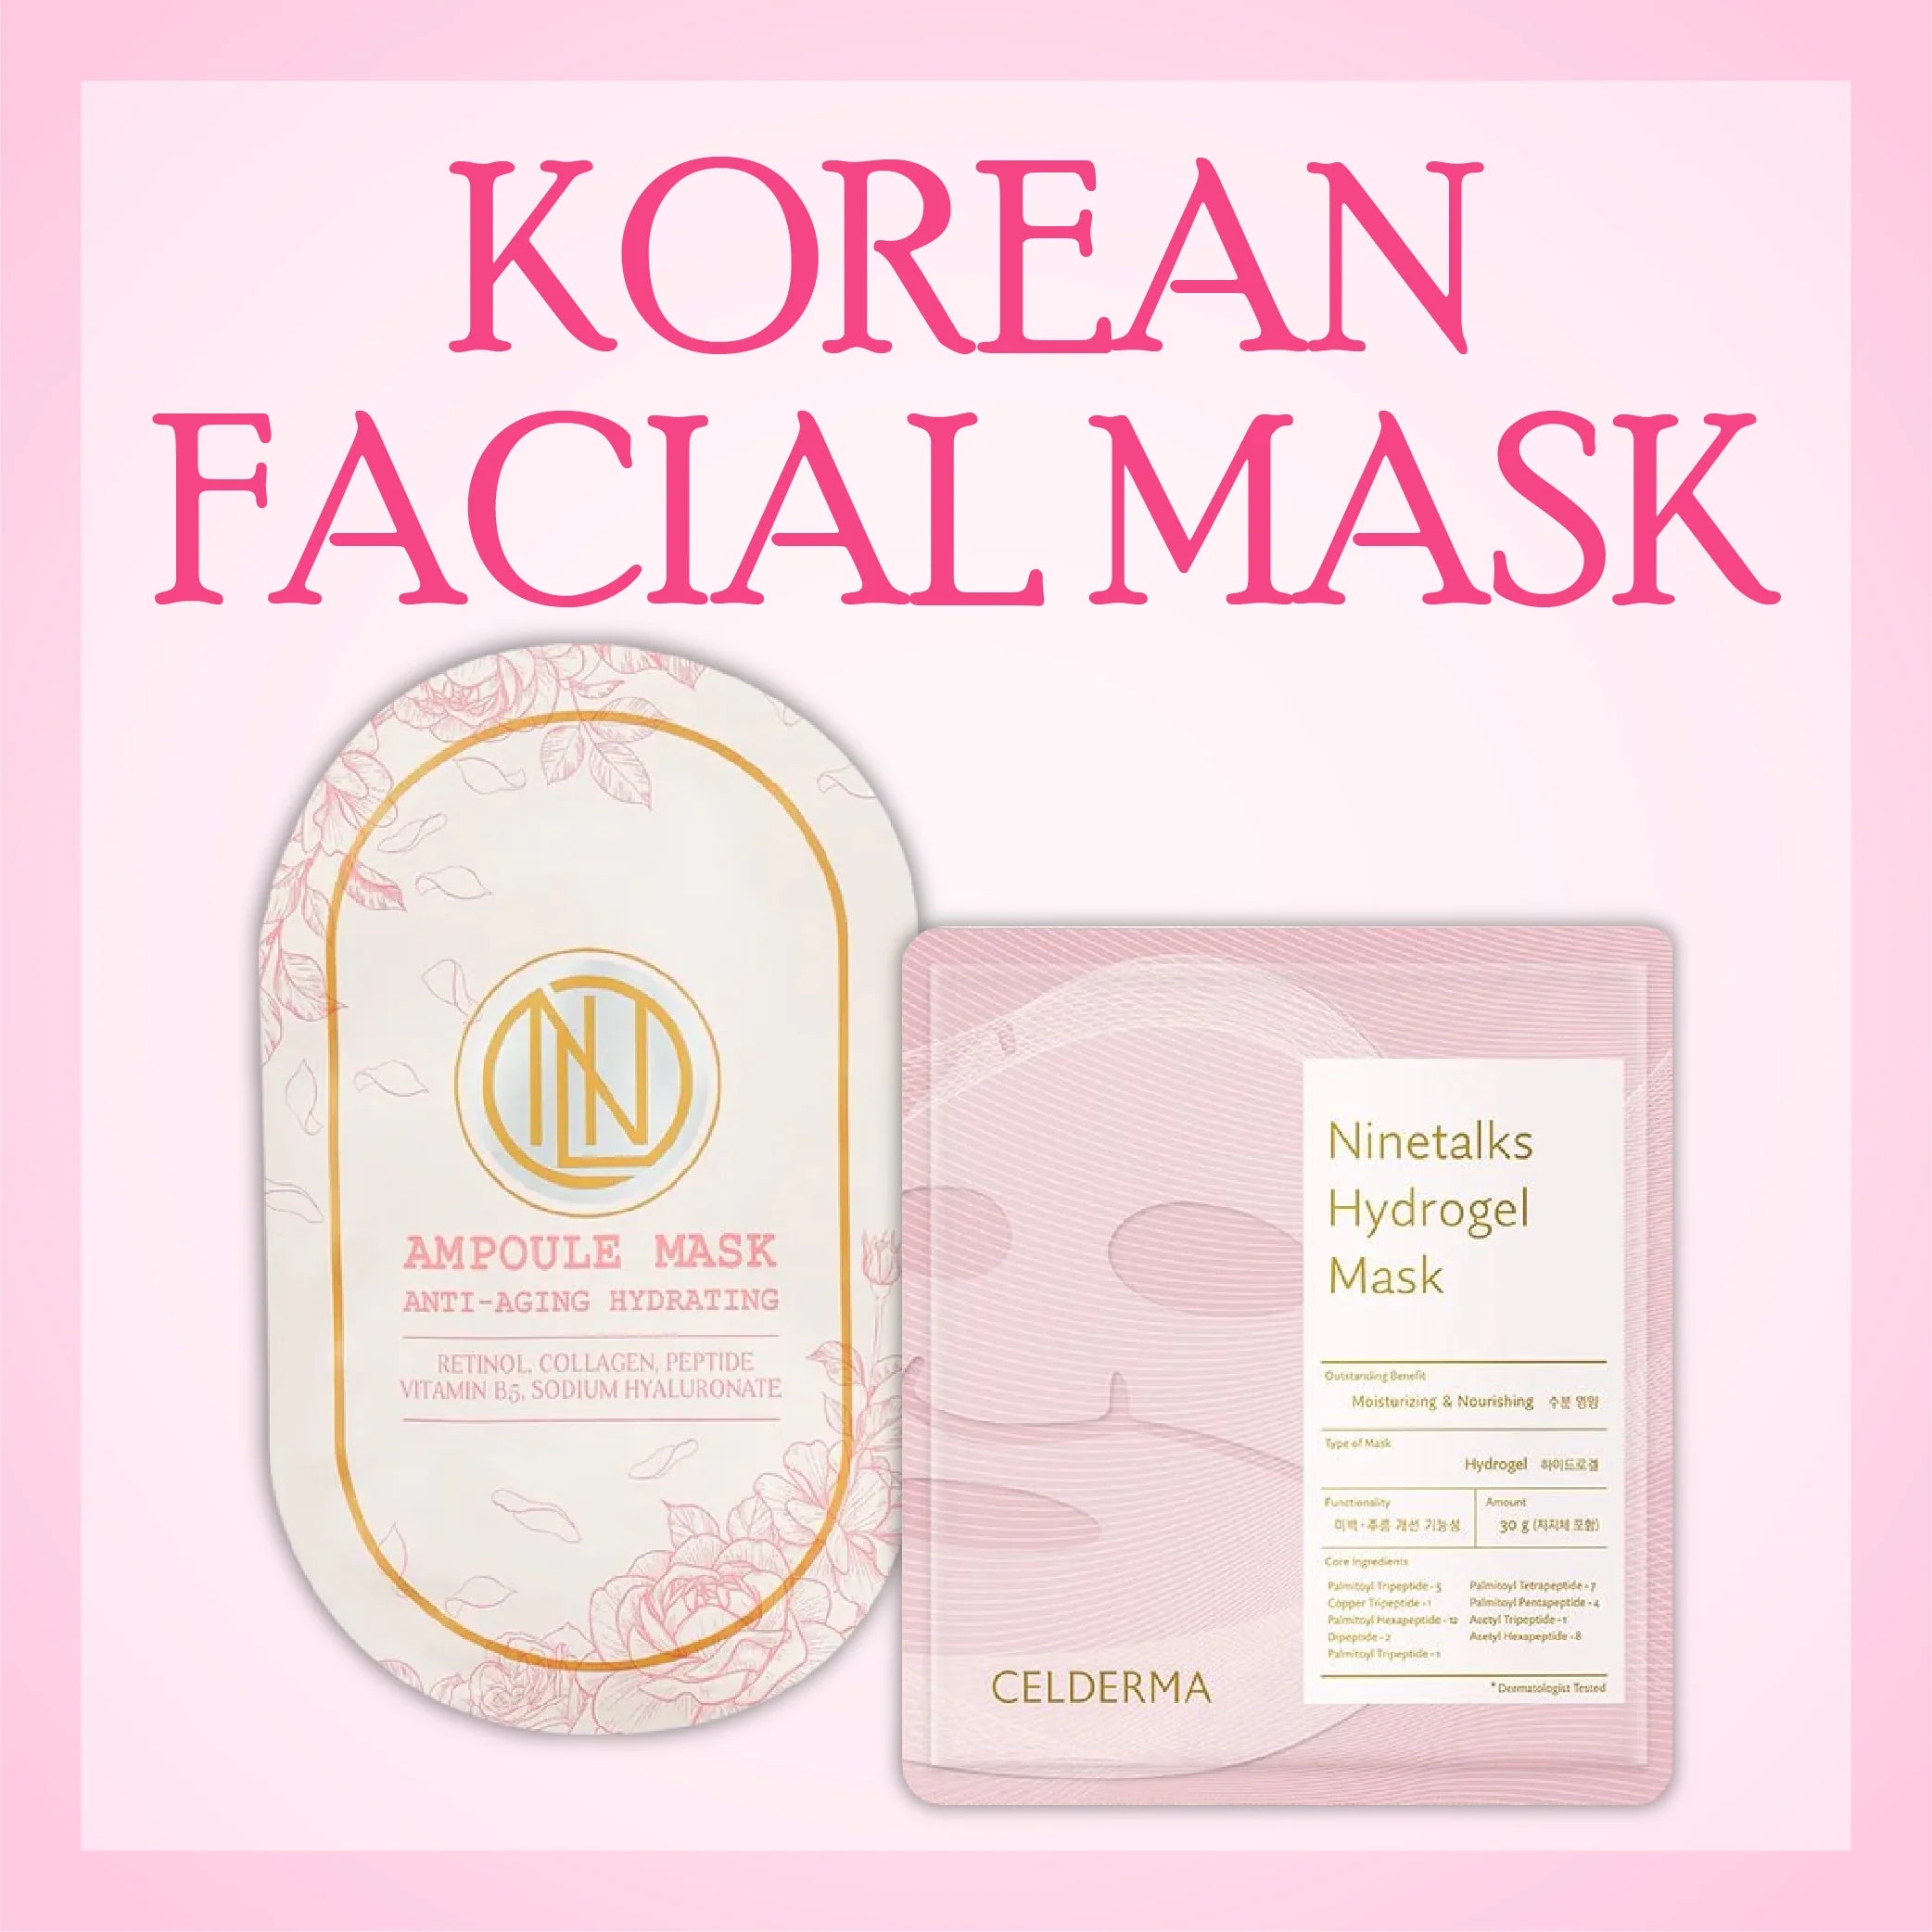 Korean Facial Mask